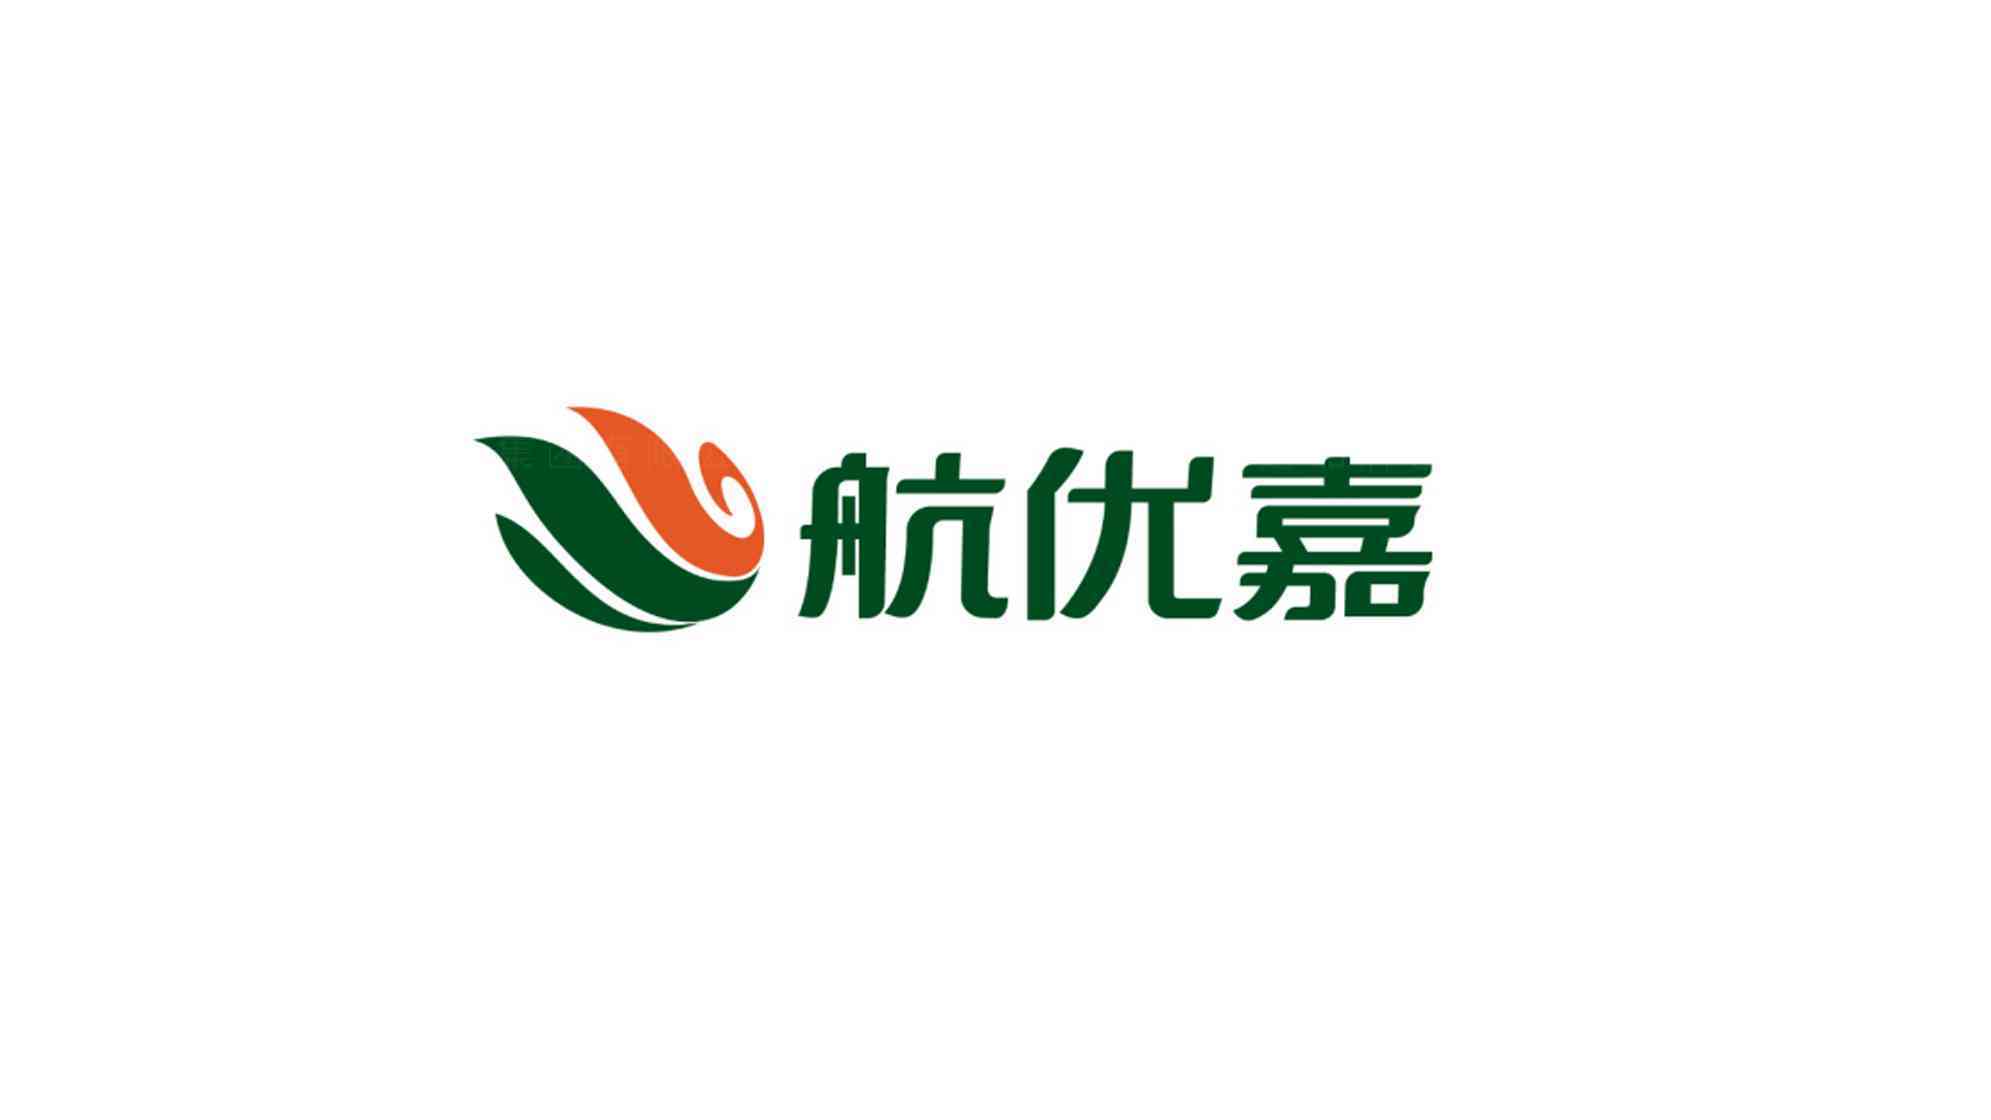 中国航油石油公司logo设计图片素材